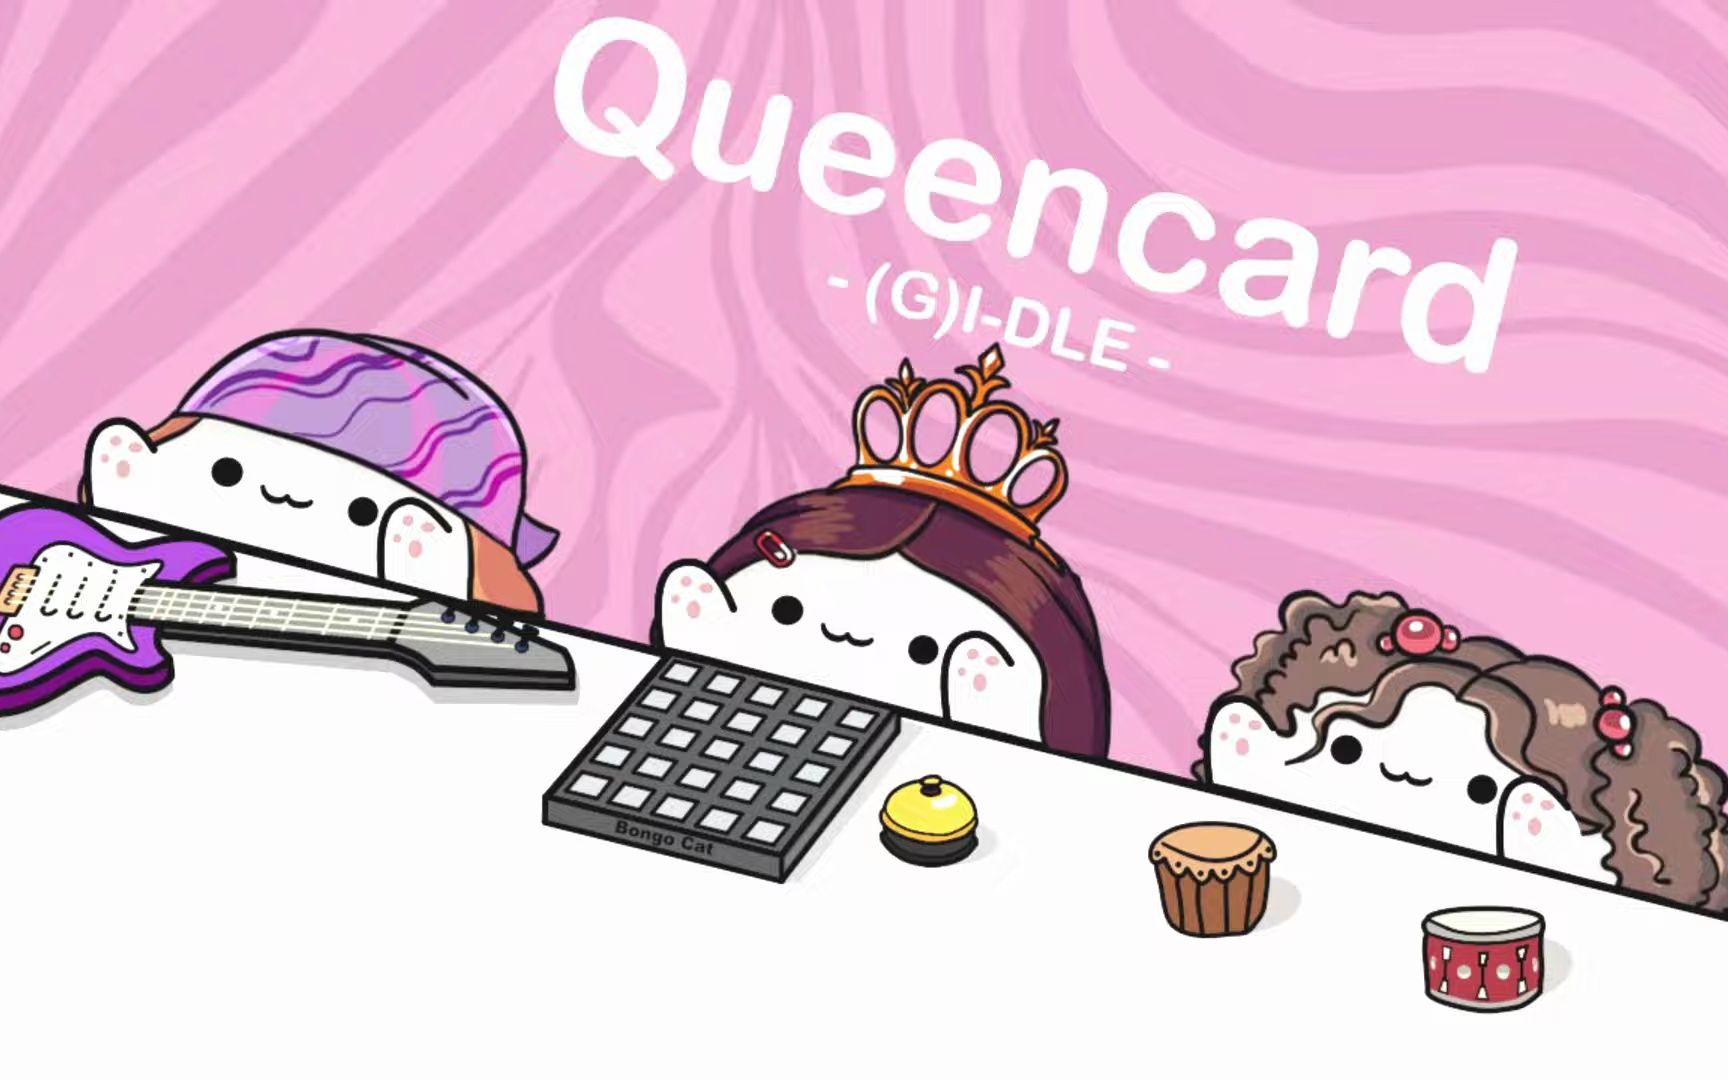 【Bongo Cat】Queencard - (G)I-DLE